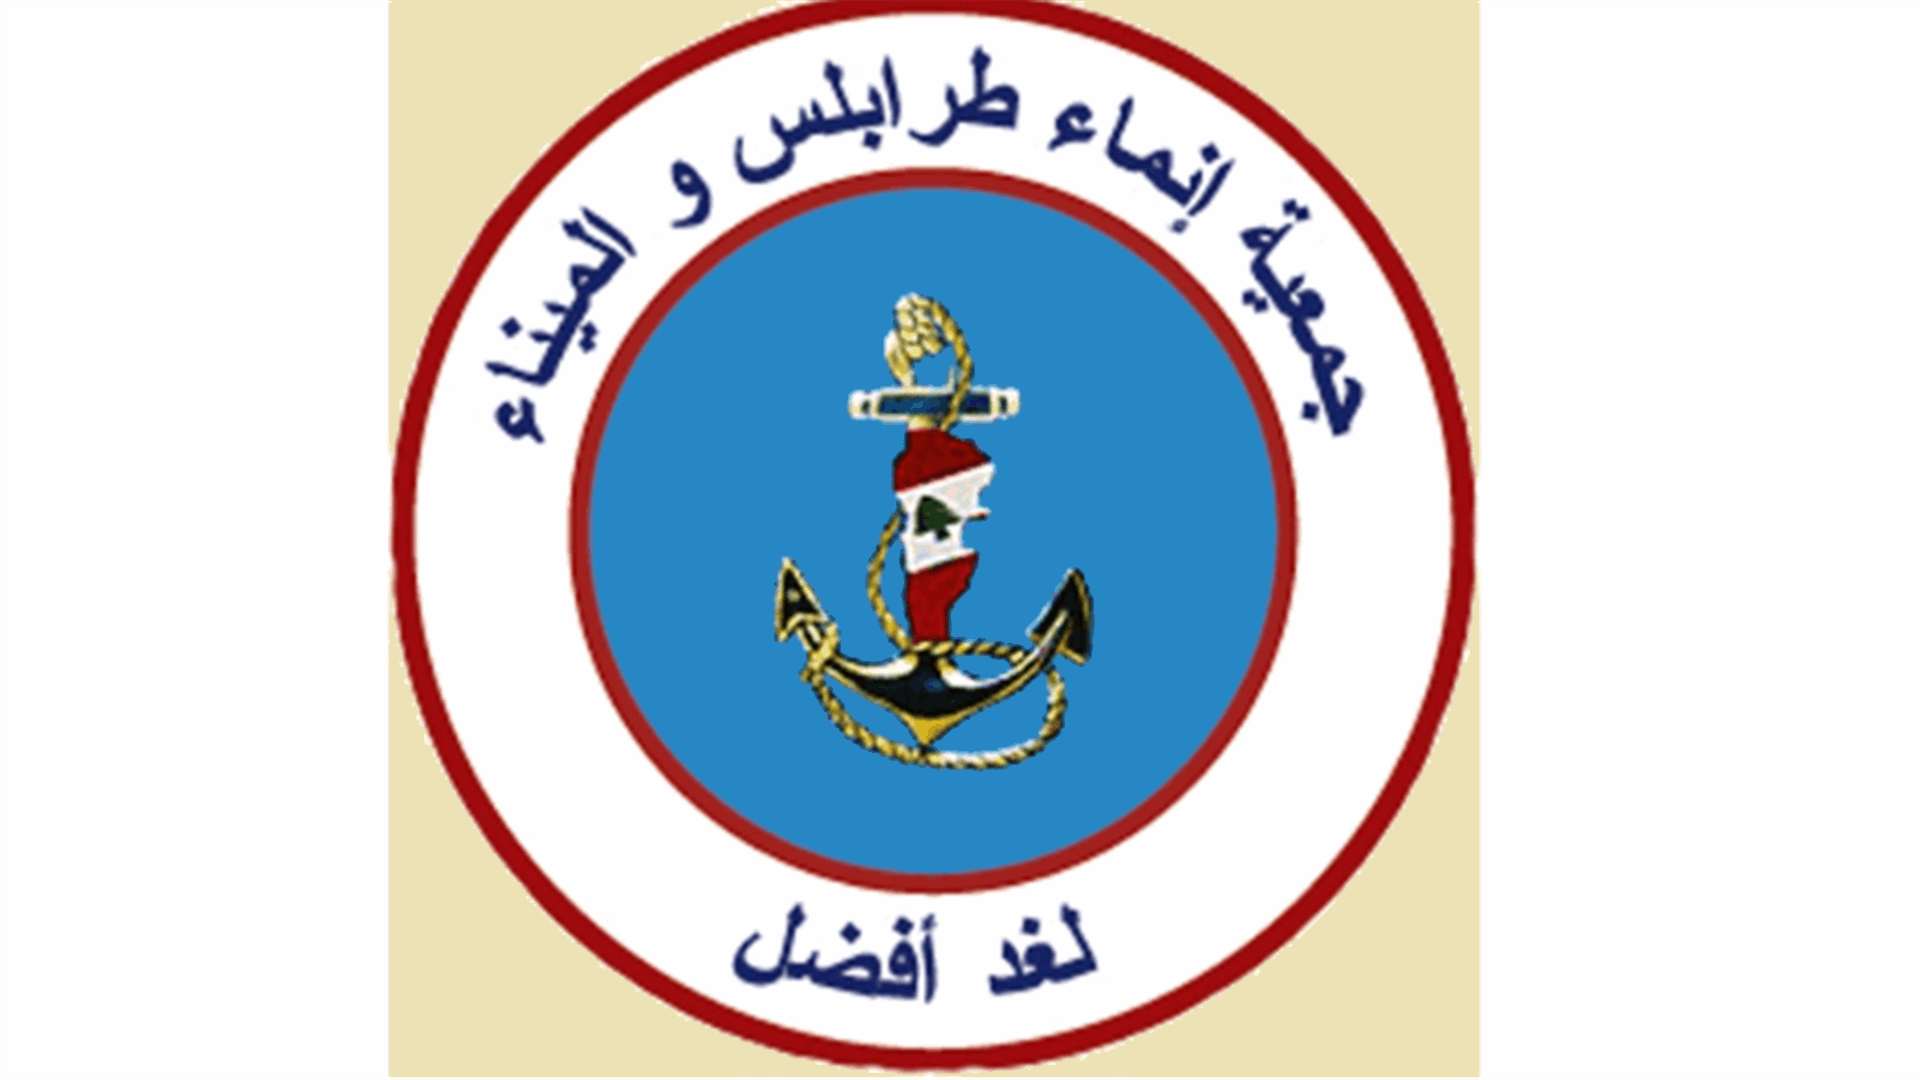 إنماء طرابلس والميناء: للإلتفات إلى موظفي القطاع العام وإعطائهم حقوقهم وإنصافهم